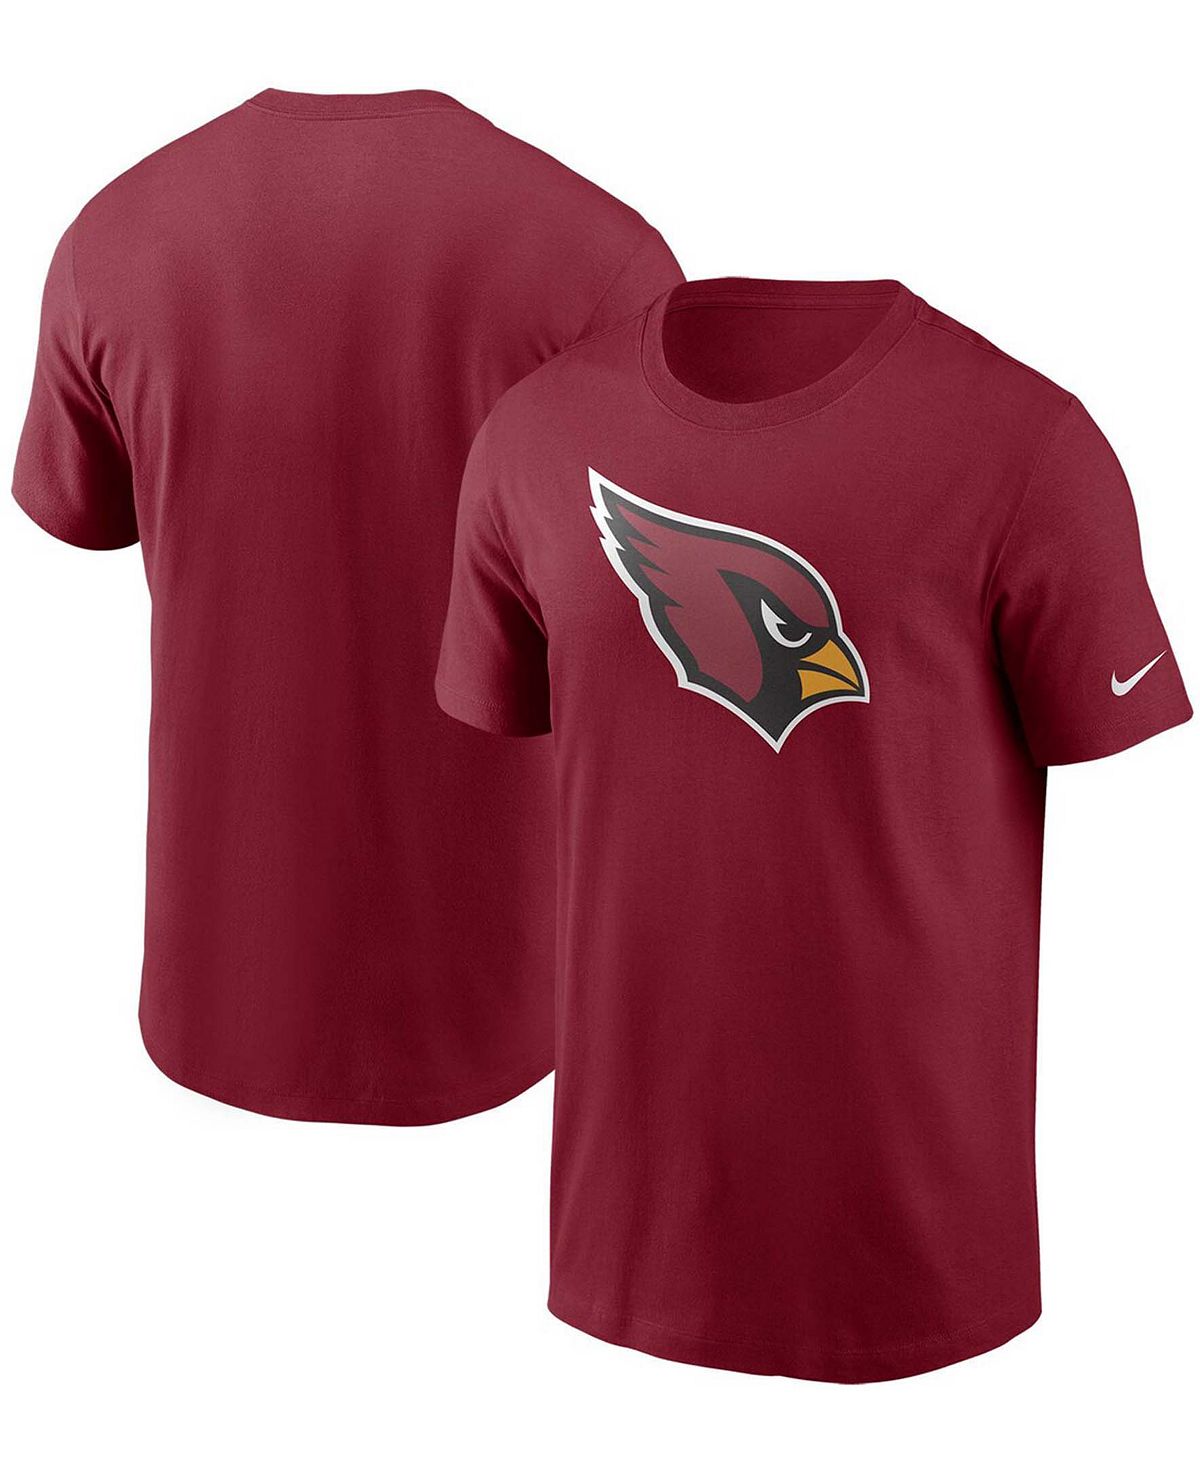 Мужская футболка с логотипом Cardinal Arizona Cardinals Primary Nike